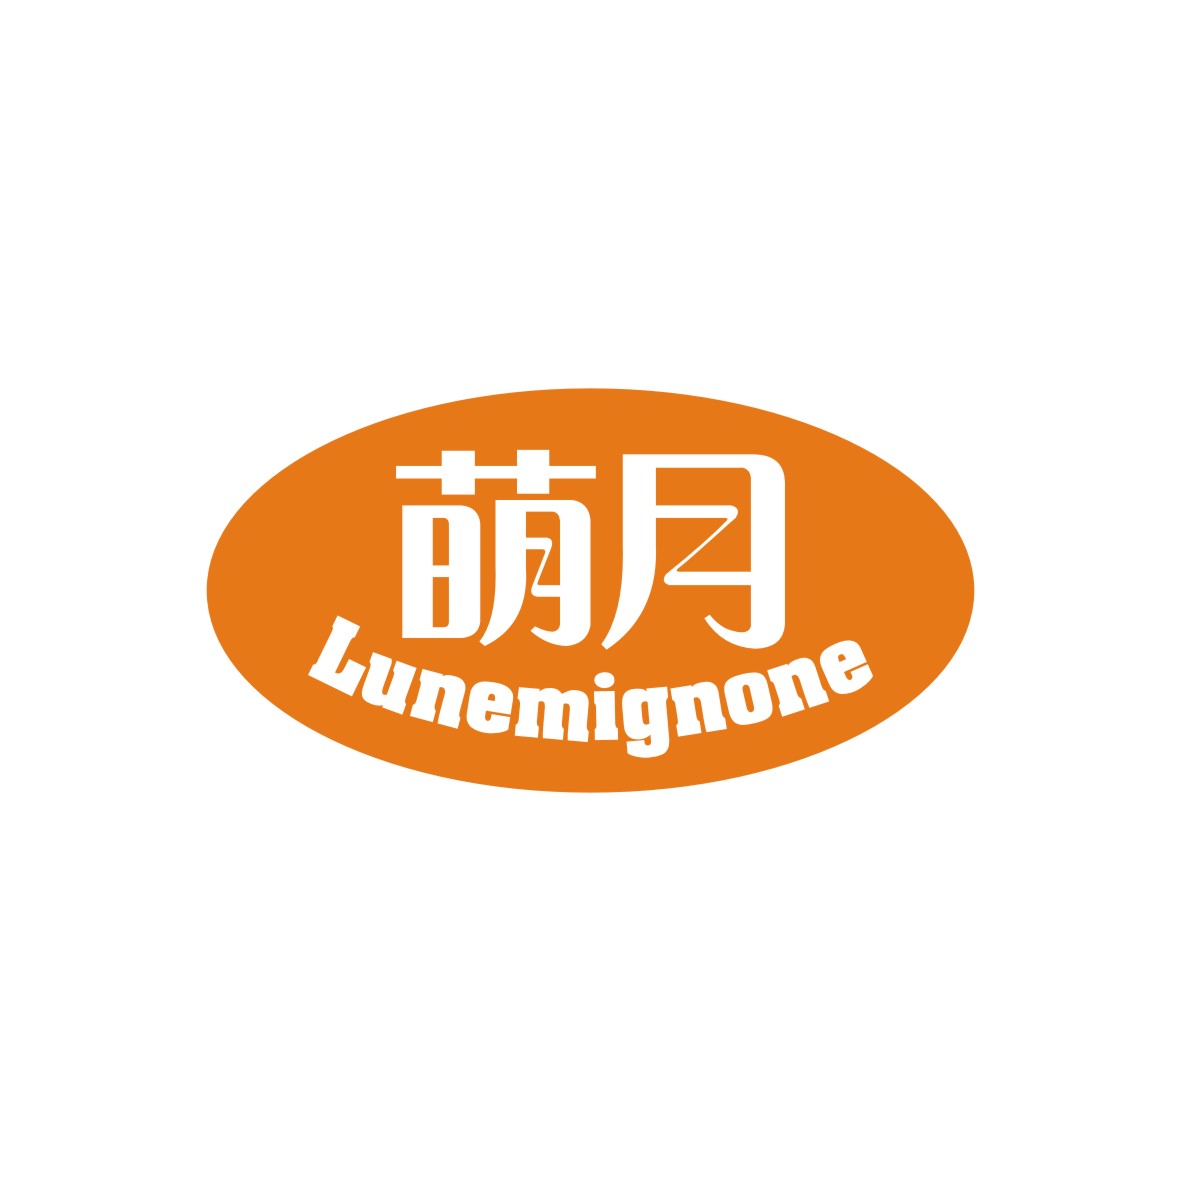 广州品翰文化发展有限公司商标萌月 LUNEMIGNONE（30类）商标转让流程及费用